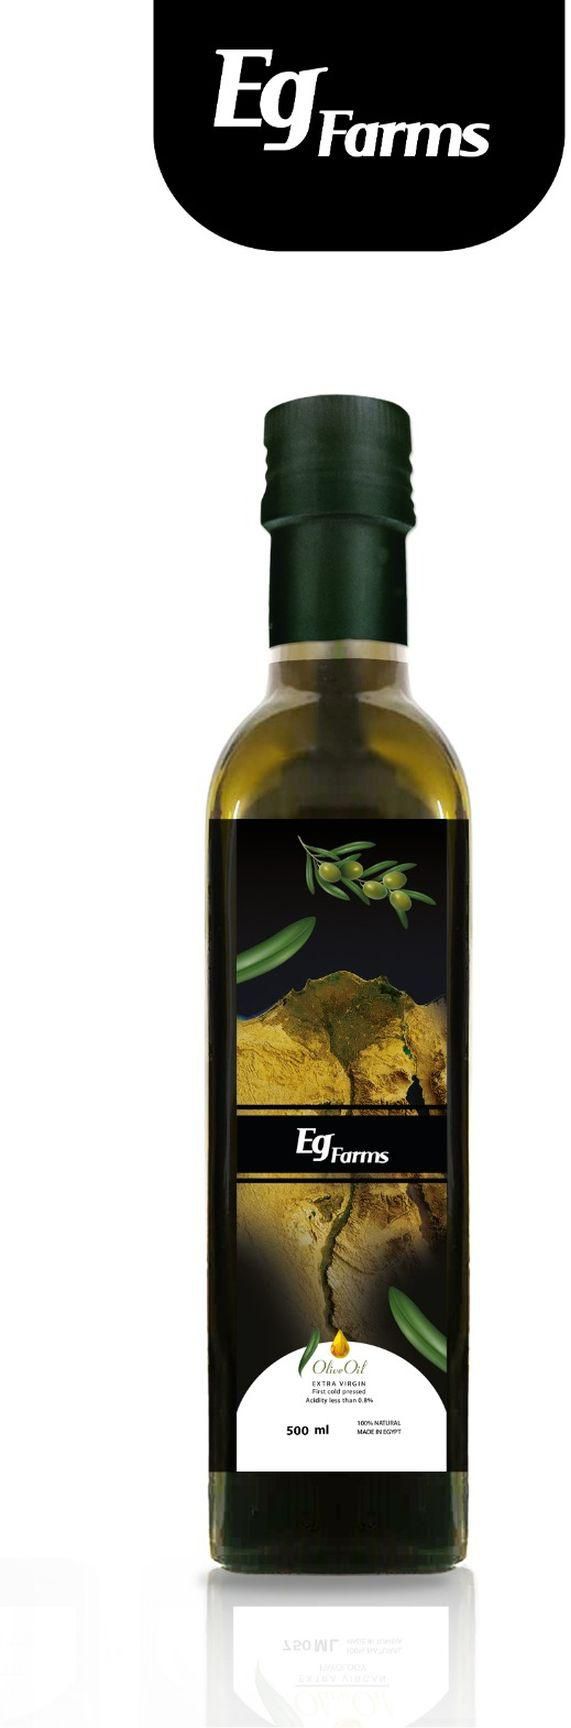 Eg farms Extra Virgin Olive Oil